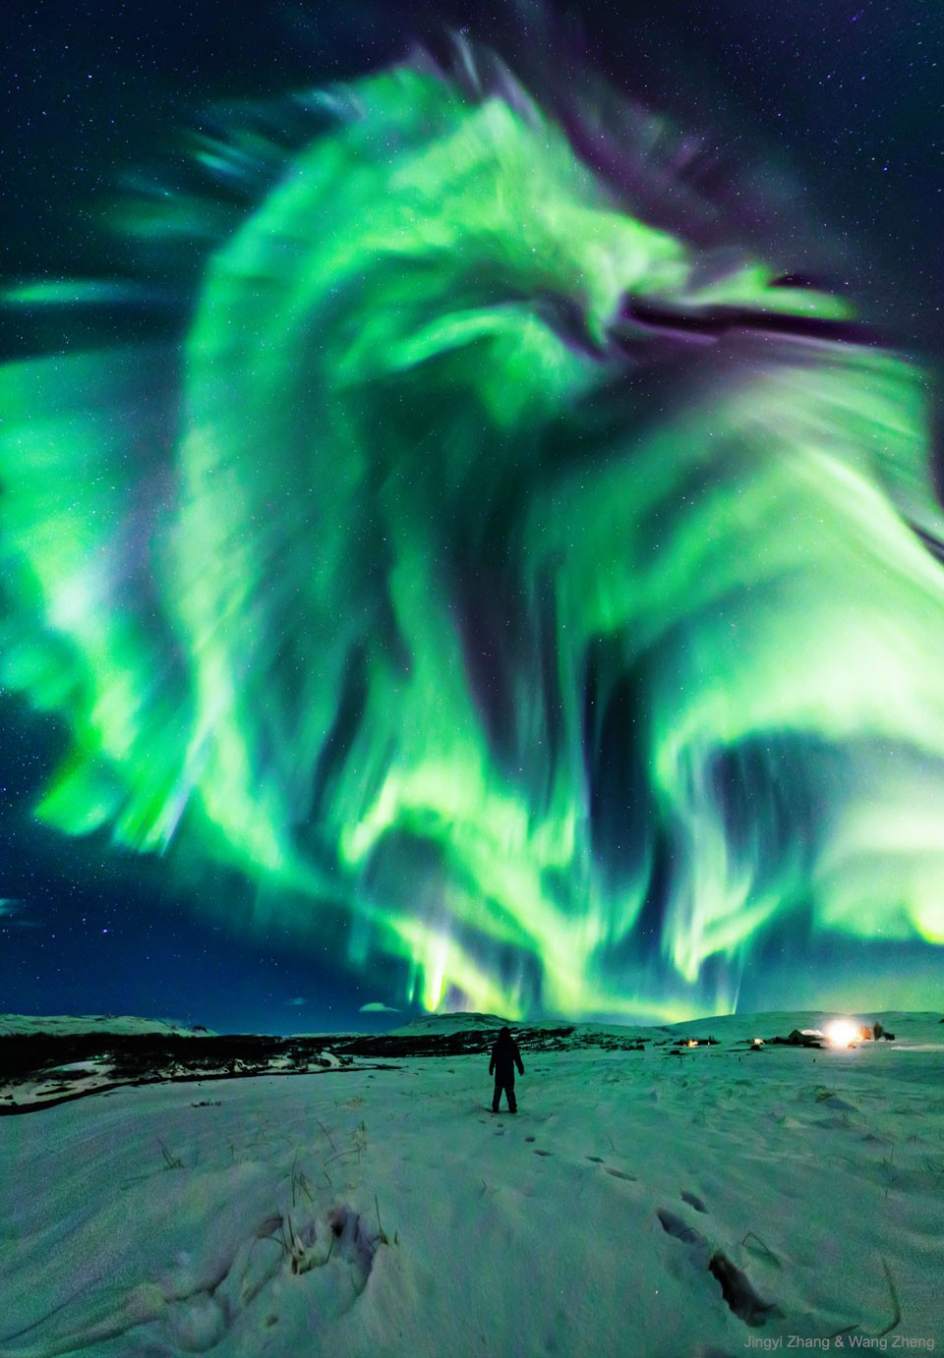 Una Espectacular Aurora Boreal Con Forma De Dragon Ilumina El Cielo Nocturno De Islandia 1, Misterio y Ciencia en Planeta Incógnito: Revista web y podcast